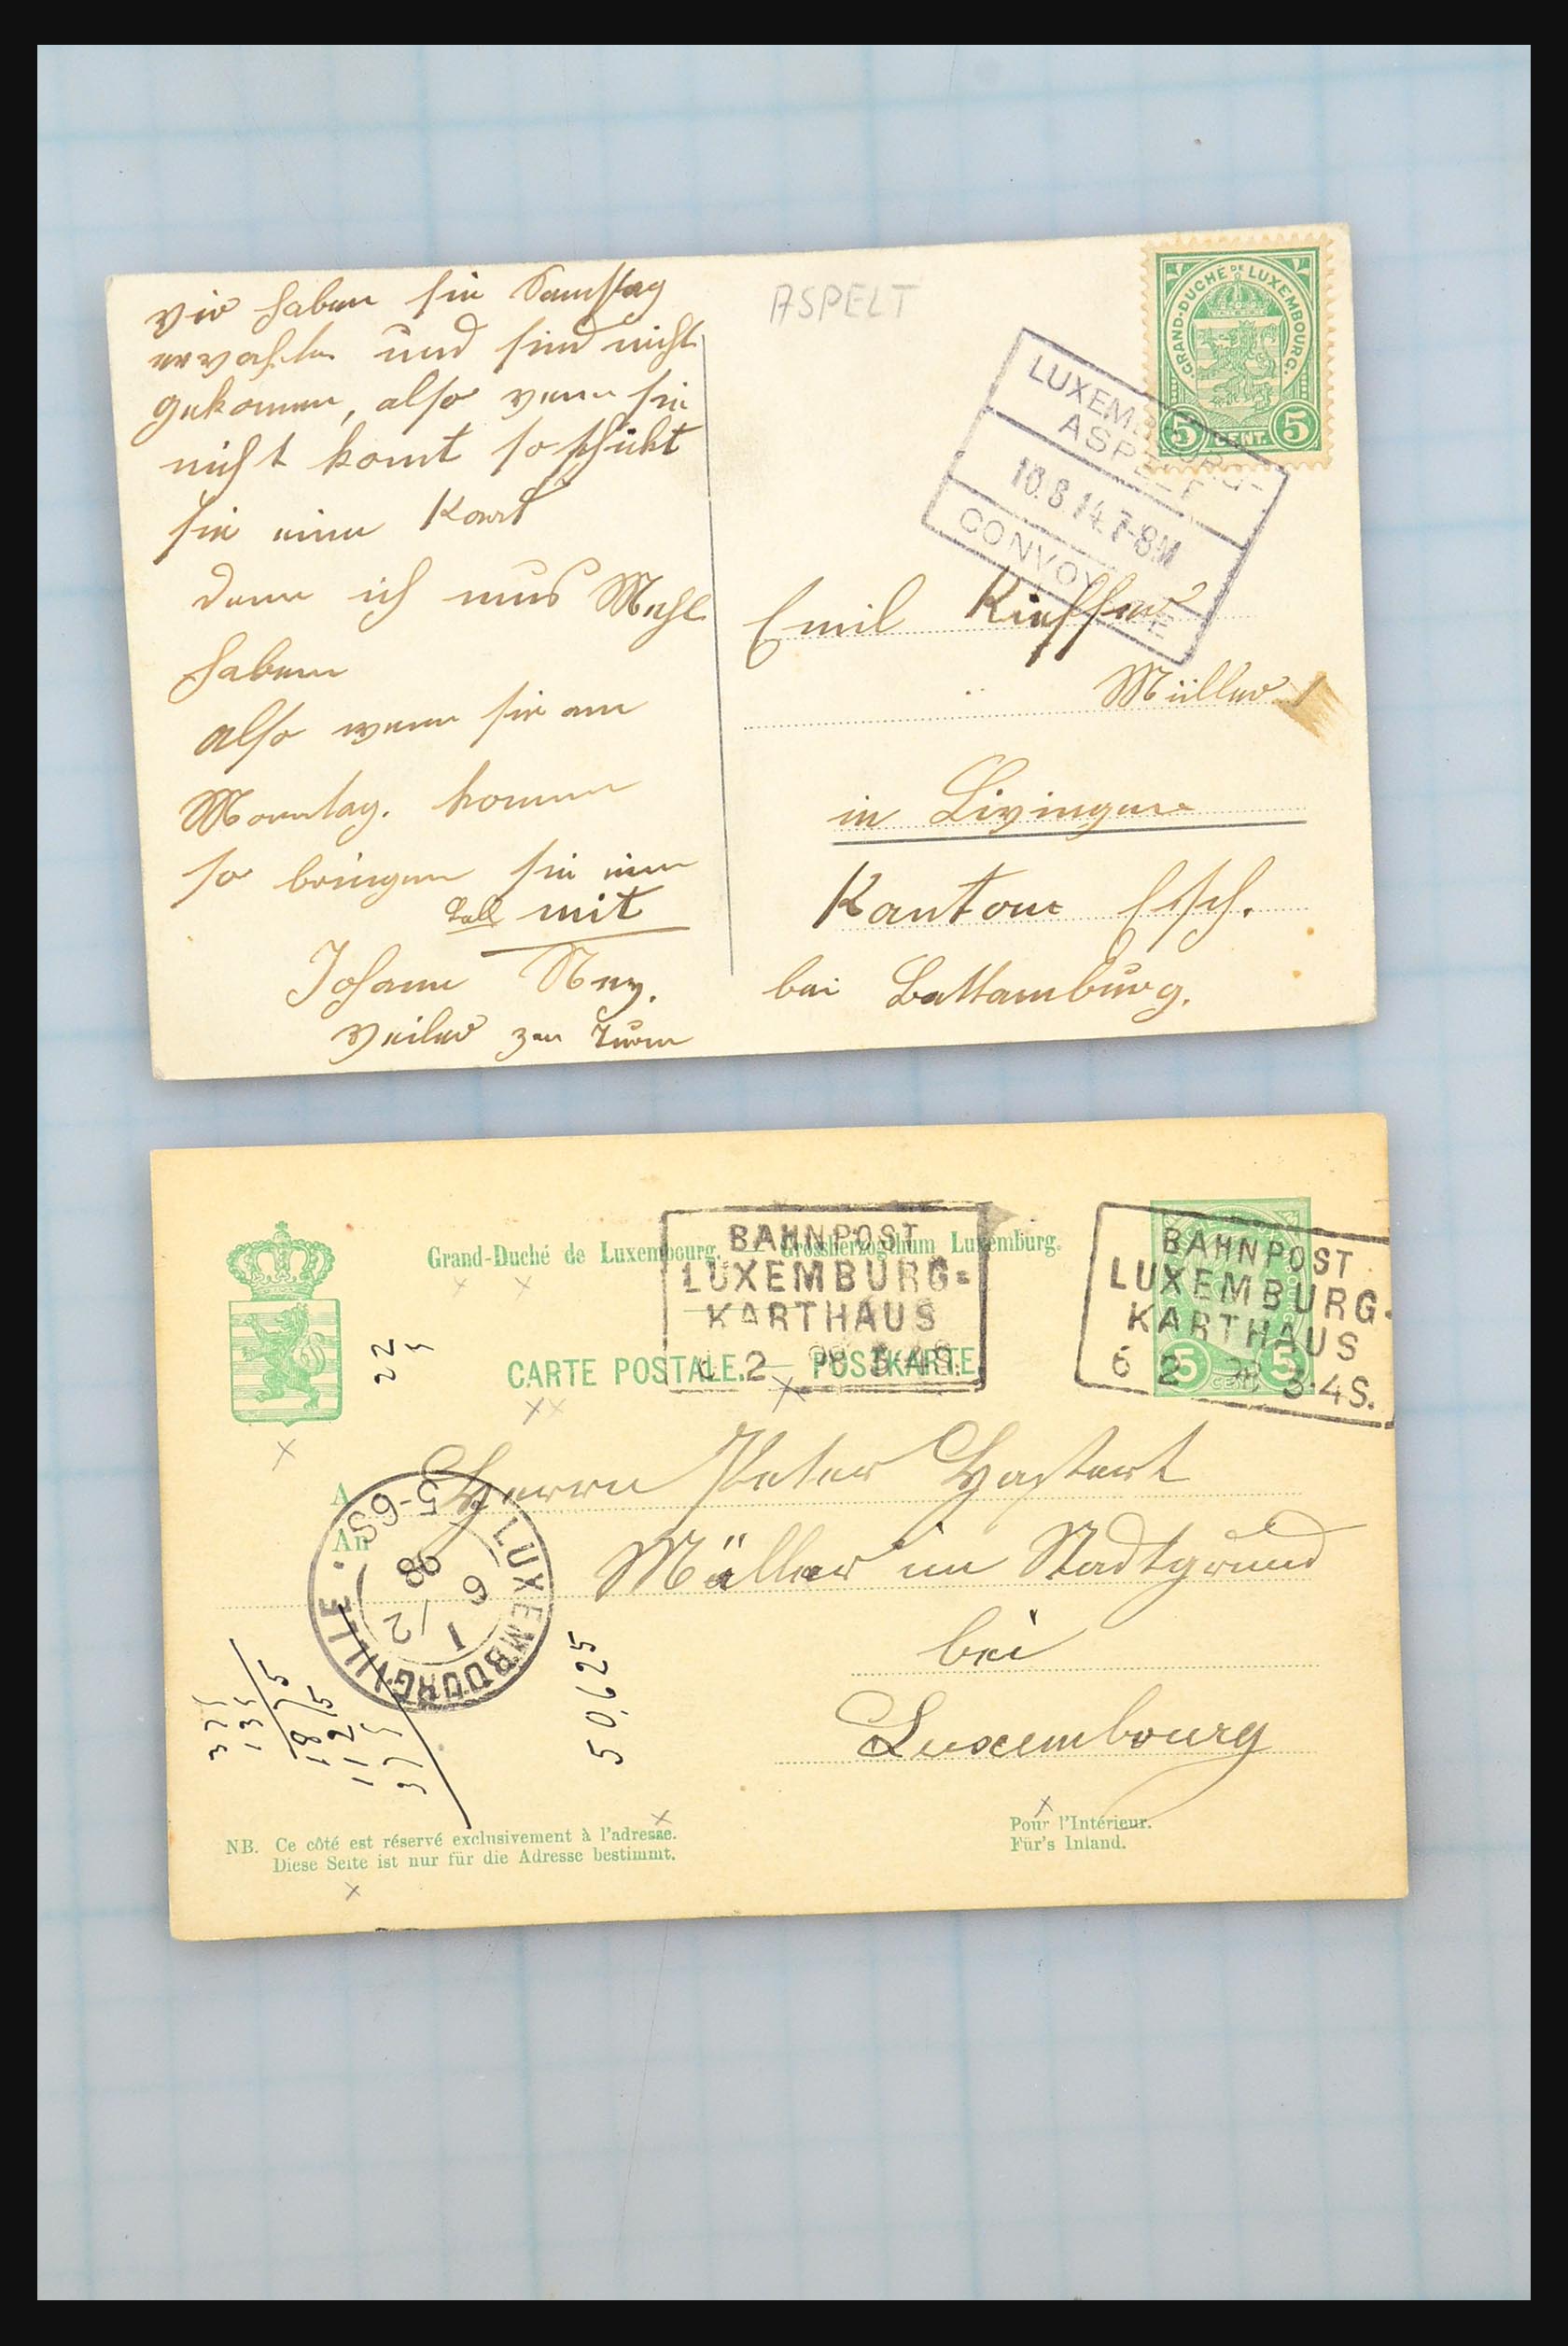 31358 093 - 31358 Portugal/Luxemburg/Griekenland brieven 1880-1960.